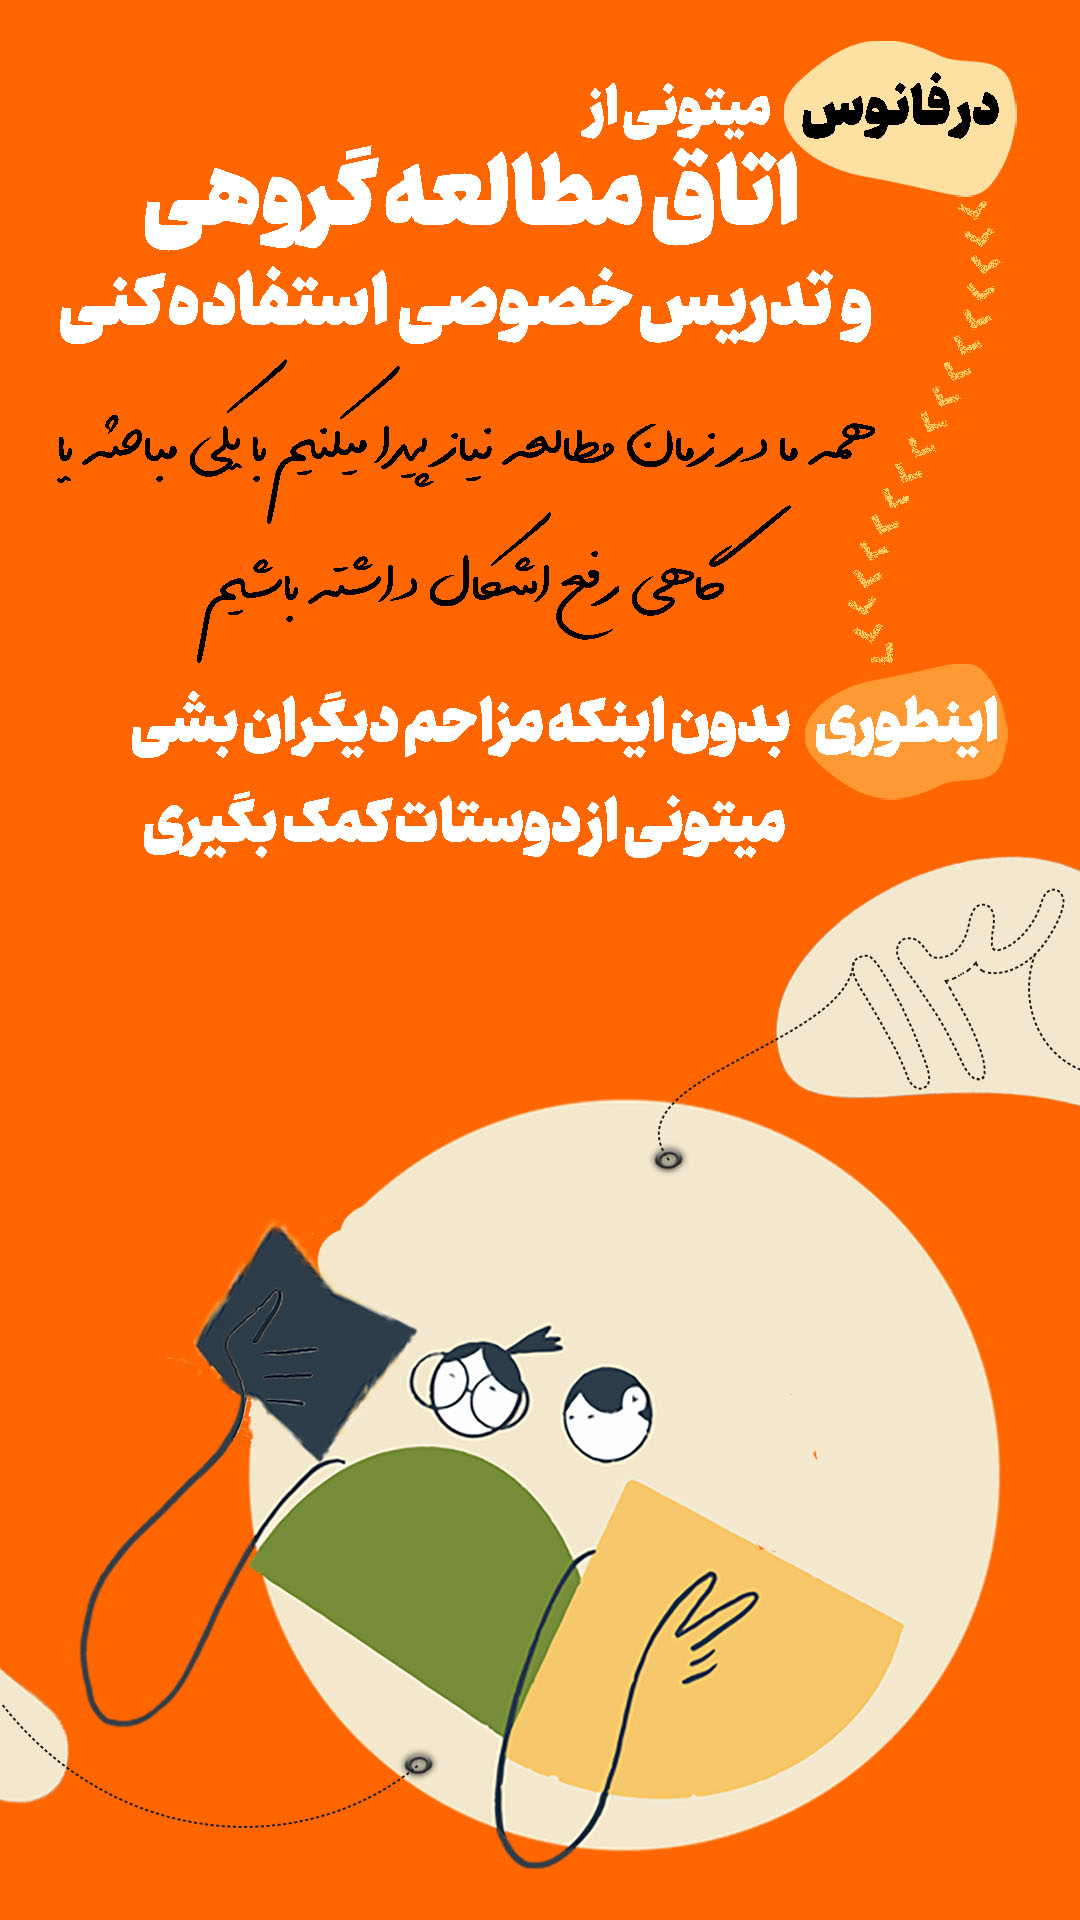 معرفی کمپ مطالعاتی شیراز13